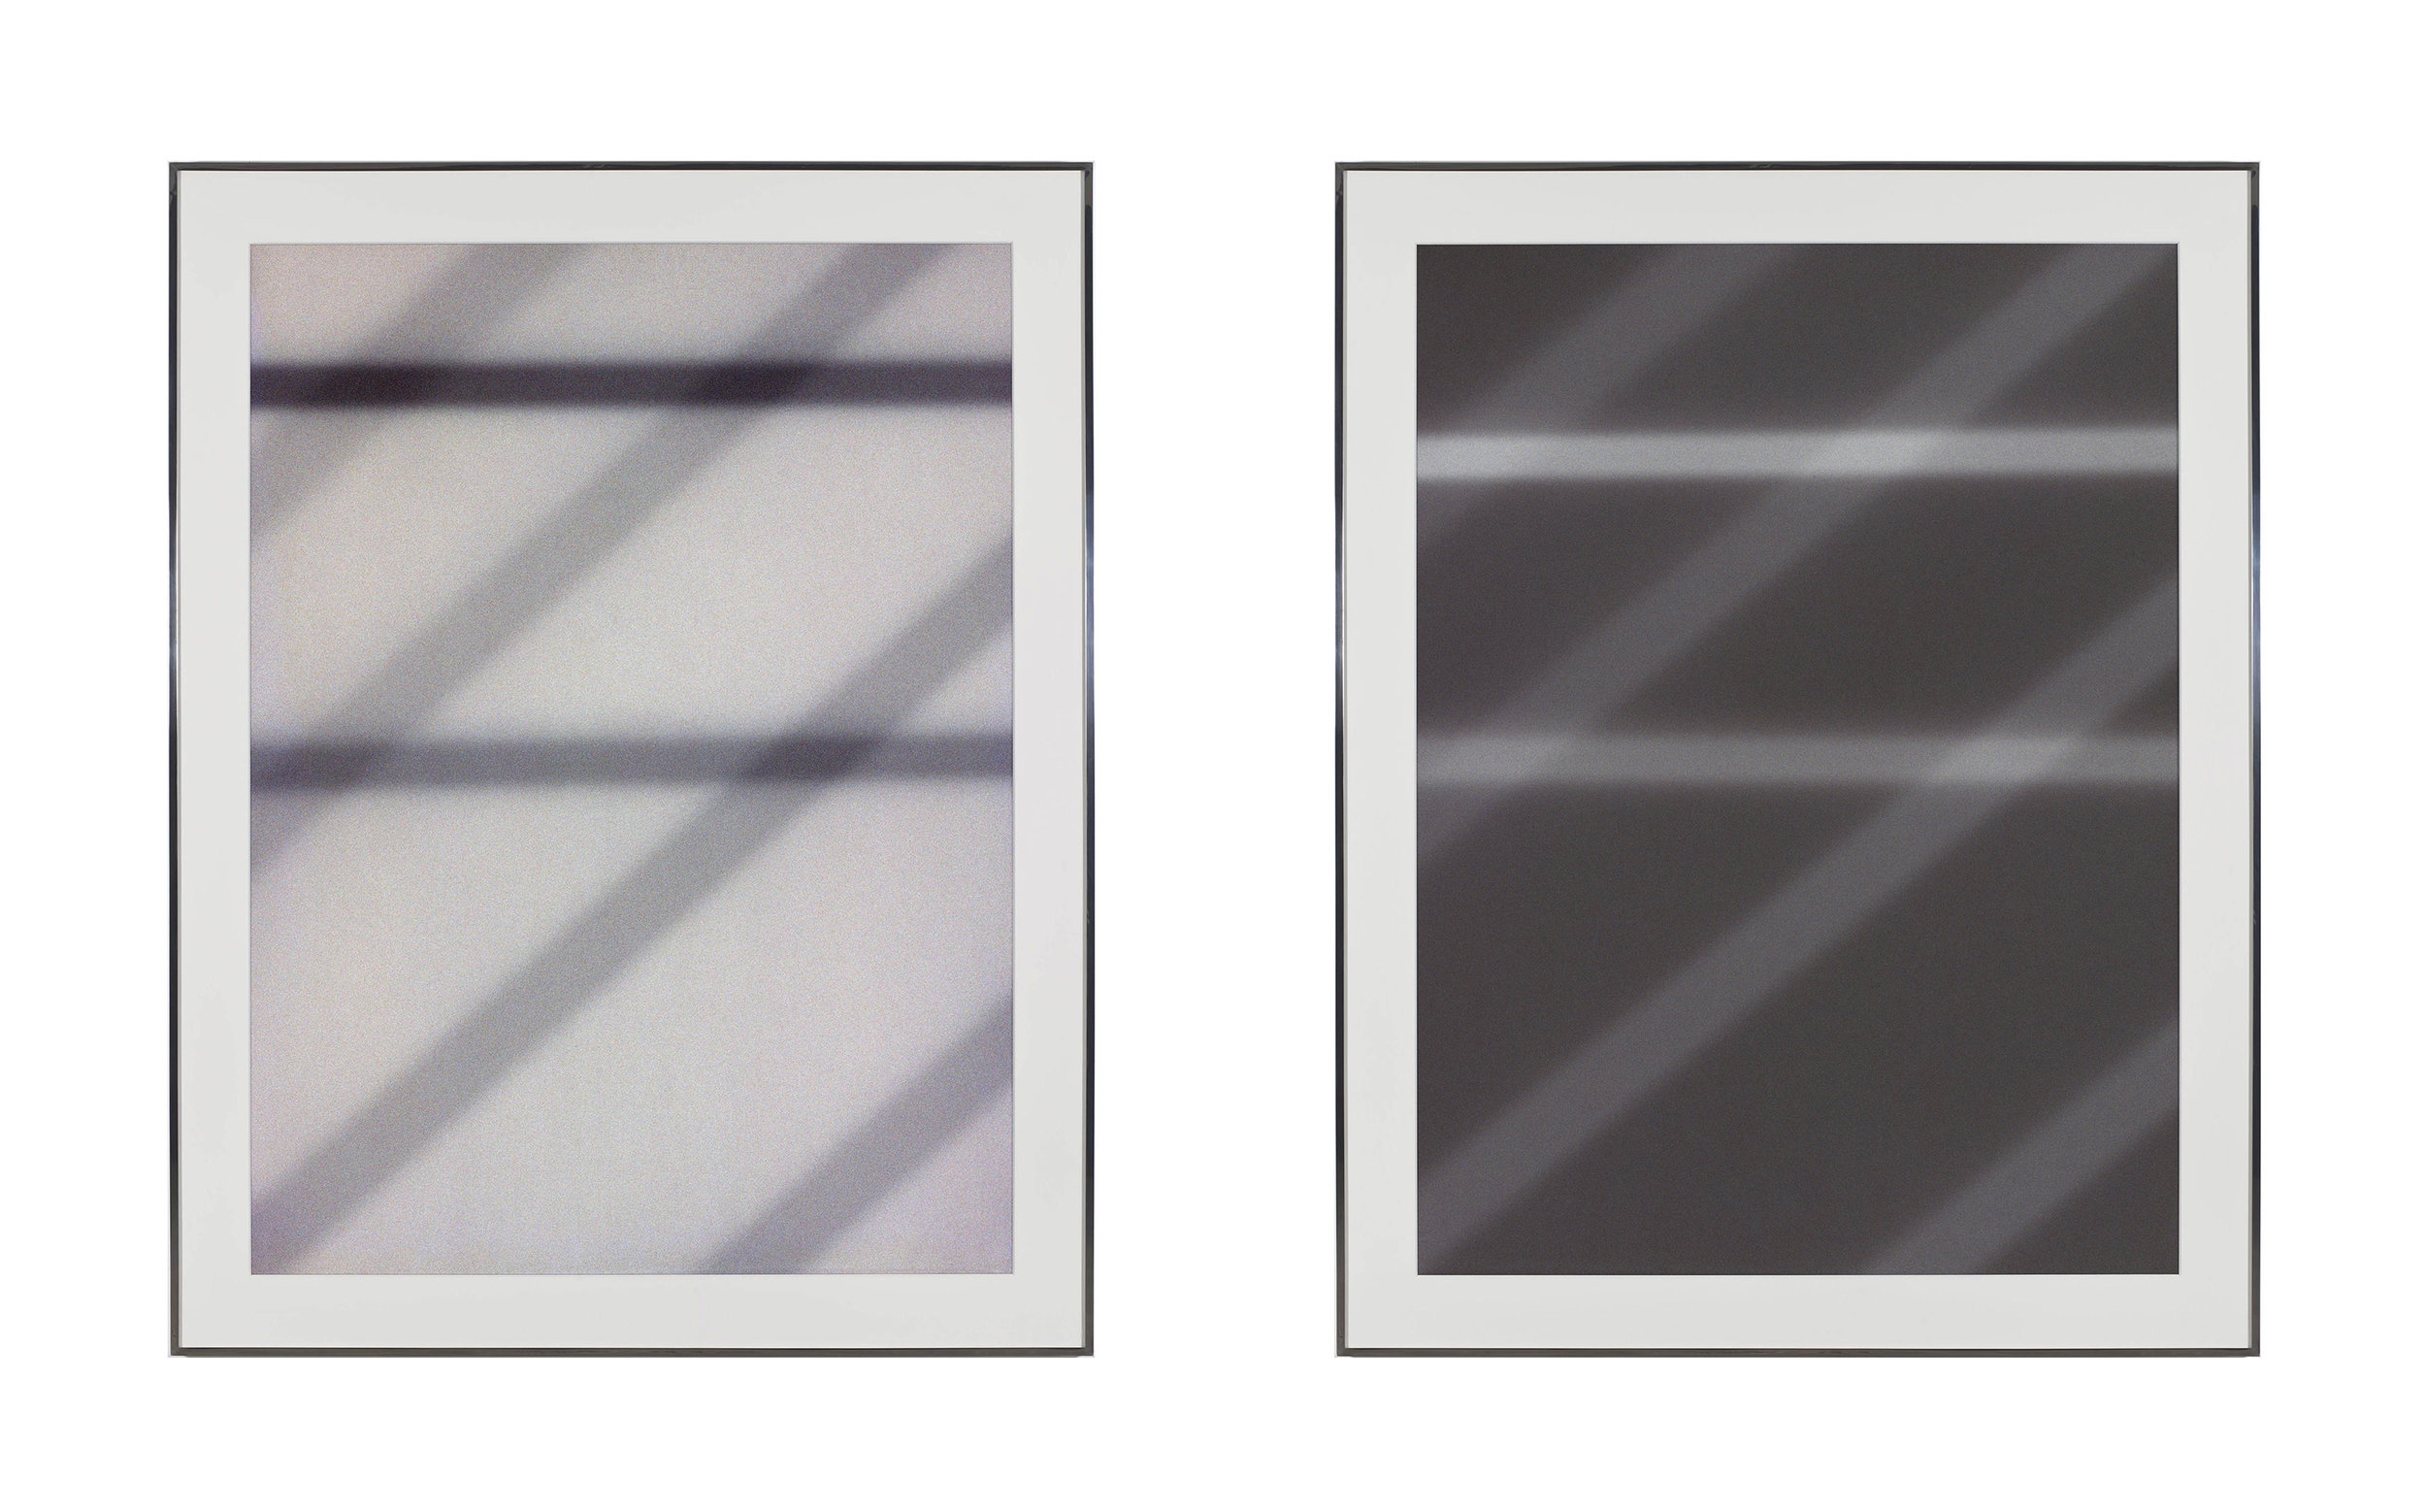   Transparency (Positive) [Fujichrome RDPIII Provia 100F Em. No. 05481: April 25–29, 2011 LAX/SFO/PEK PEK/SFO/LAX];&nbsp;Transparency (Negative) [Kodak Portra 400NC Em. No. 2051: April 25–29, 2011 LAX/SFO/PEK PEK/SFO/LAX]   2011  Epson Ultrachrome K3